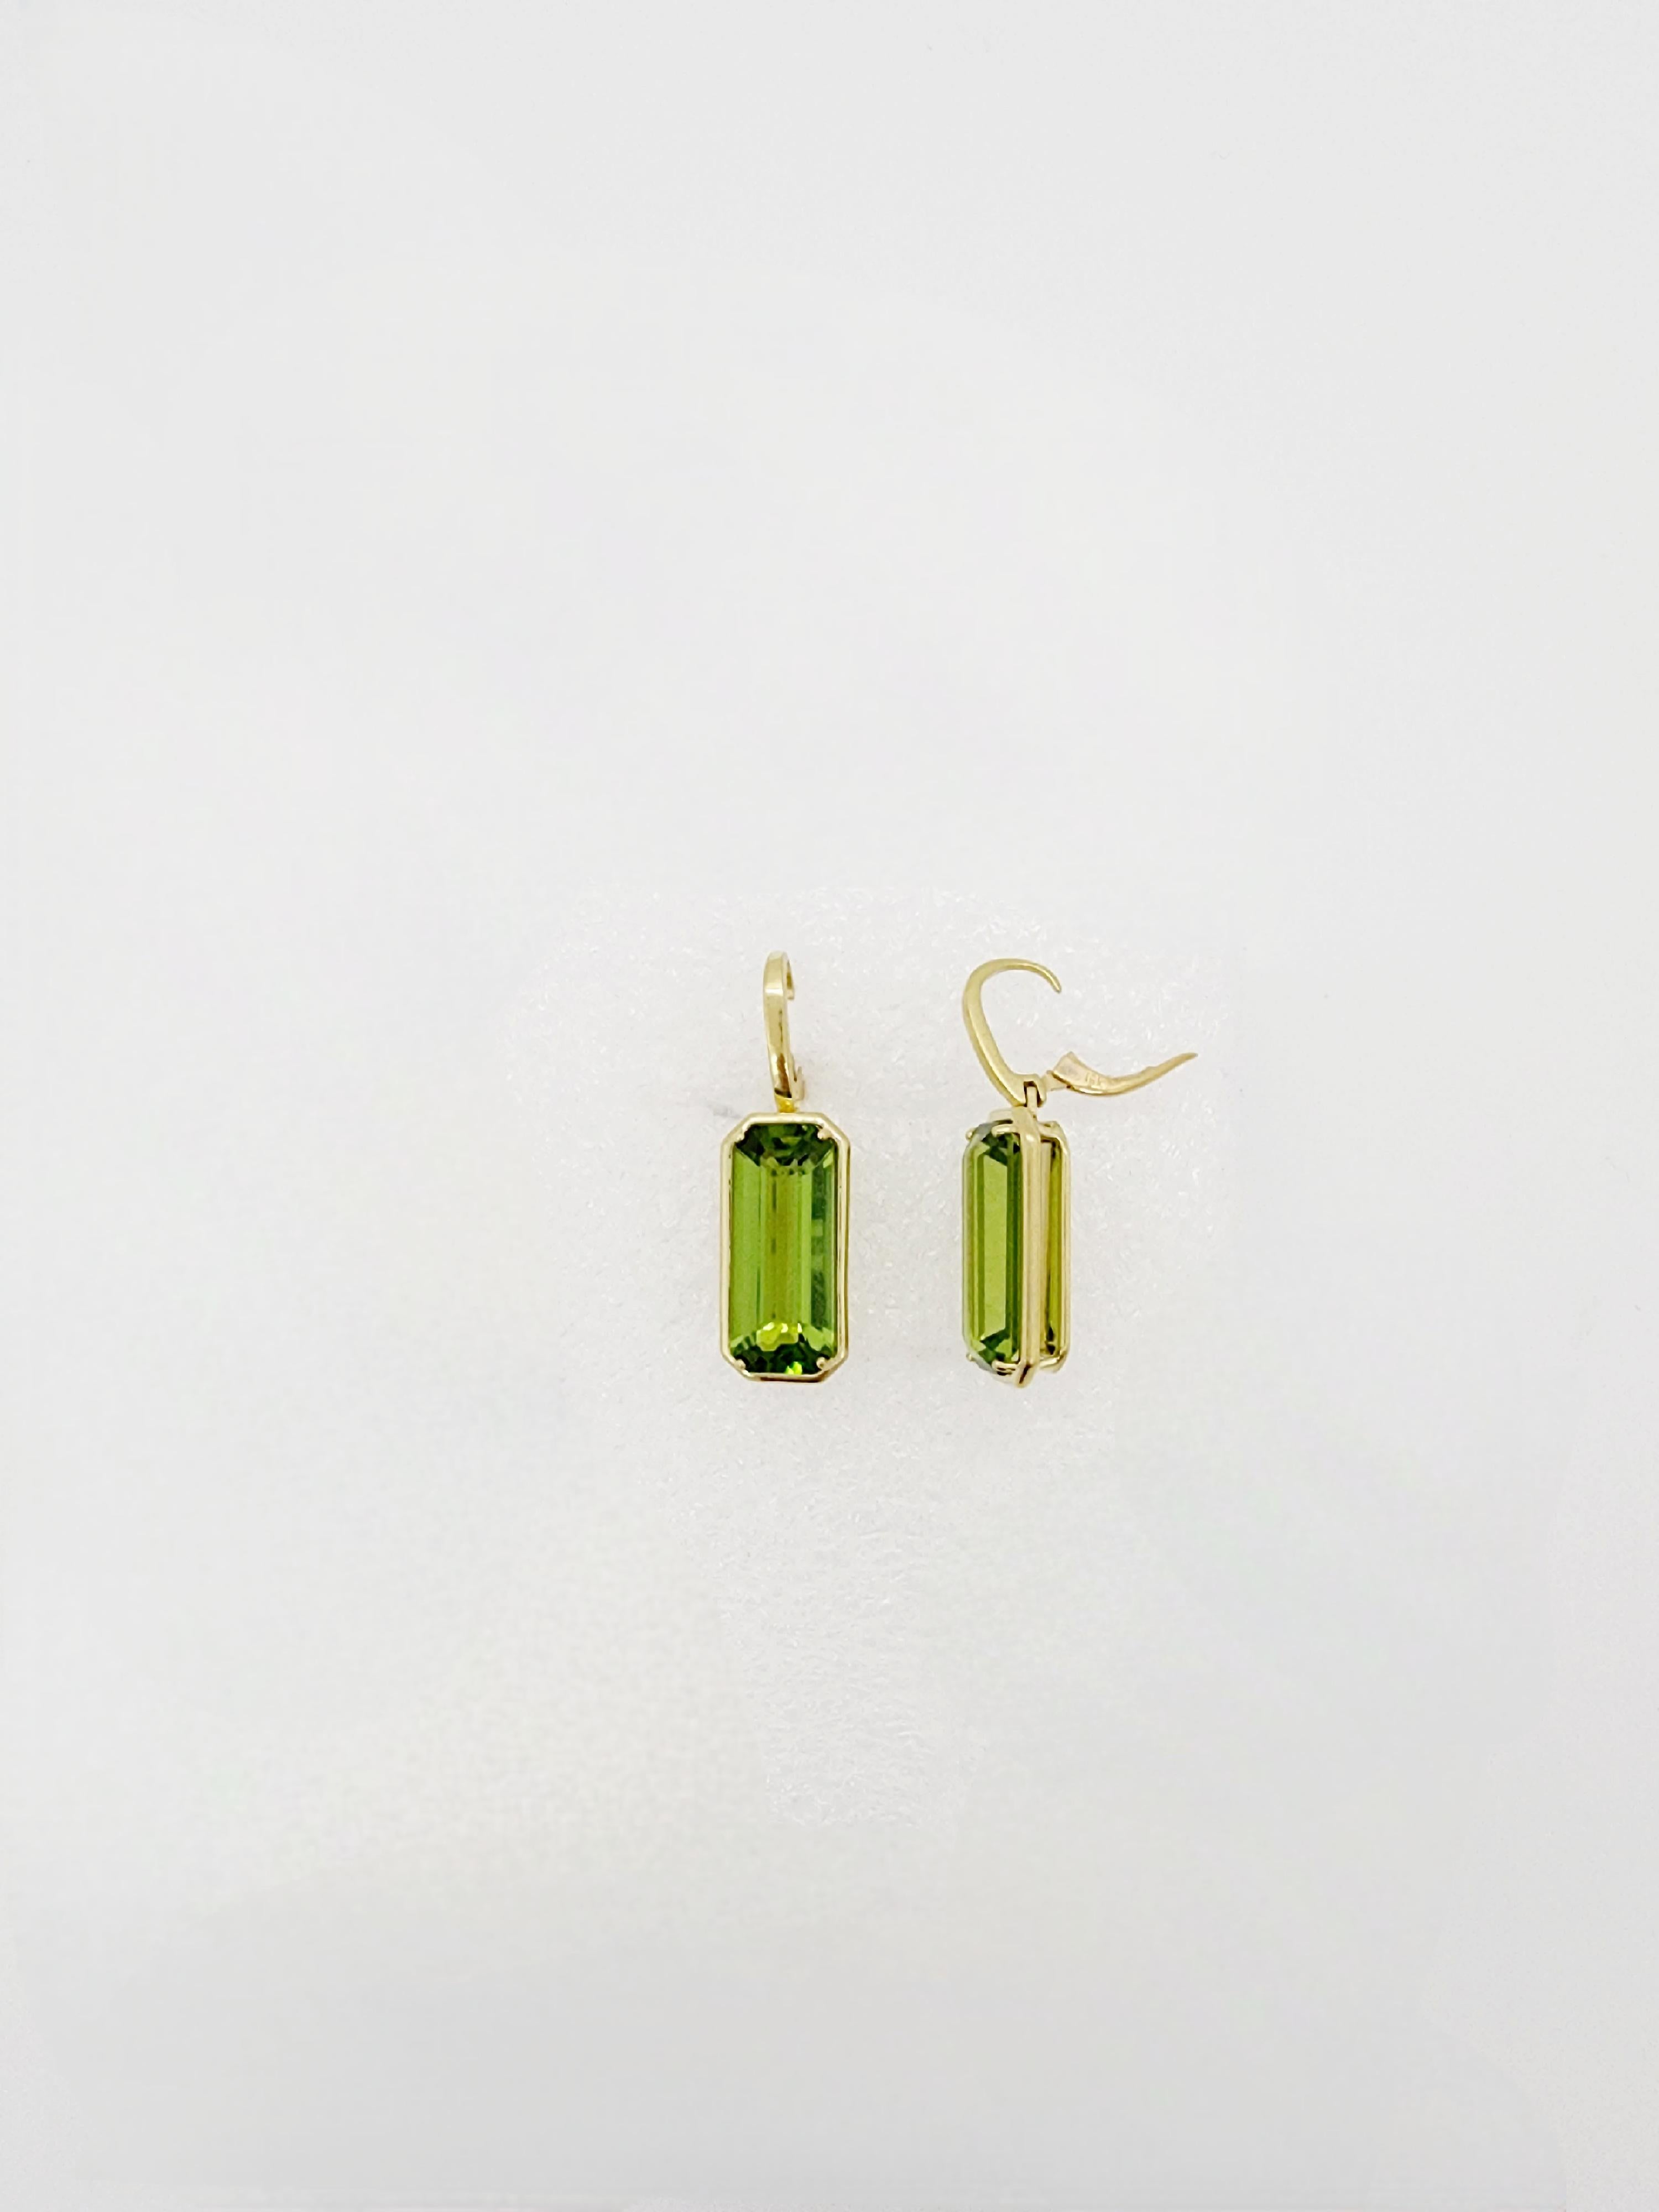 Peridot Emerald Cut Dangle Earrings in 18k Yellow Gold For Sale 2